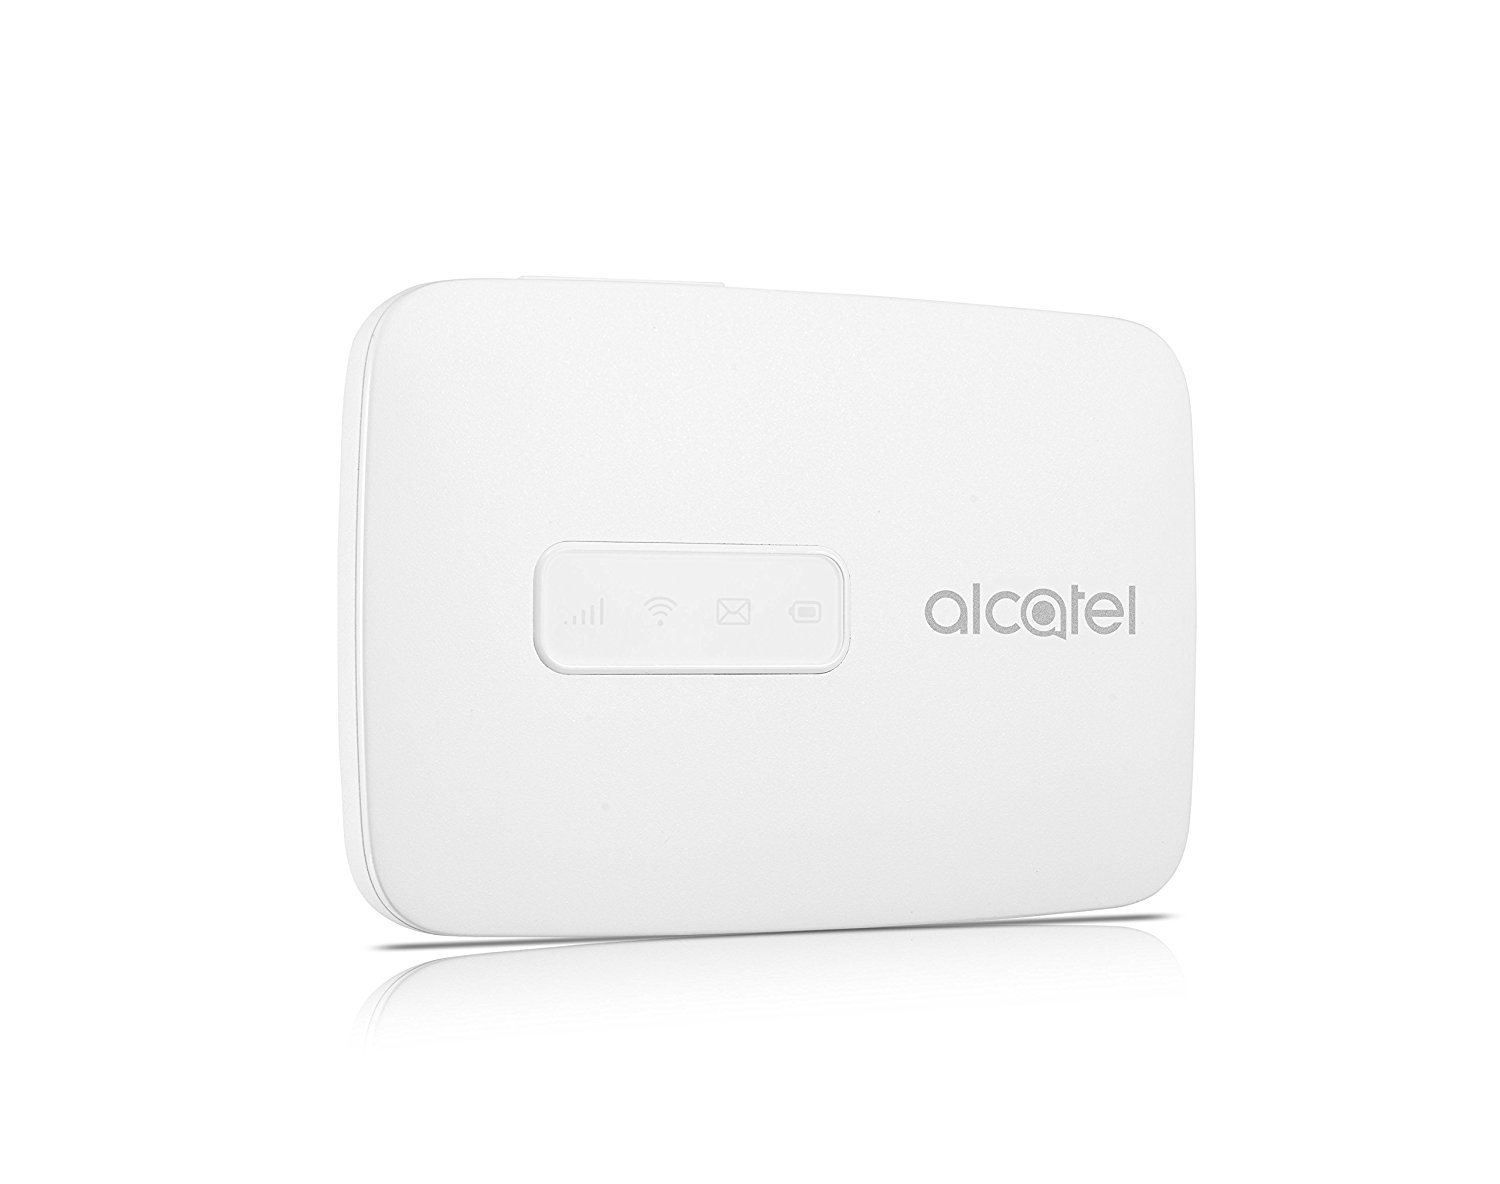 Alcatel Link Zone Ausrüstung für drahtloses Handy-Netzwerk